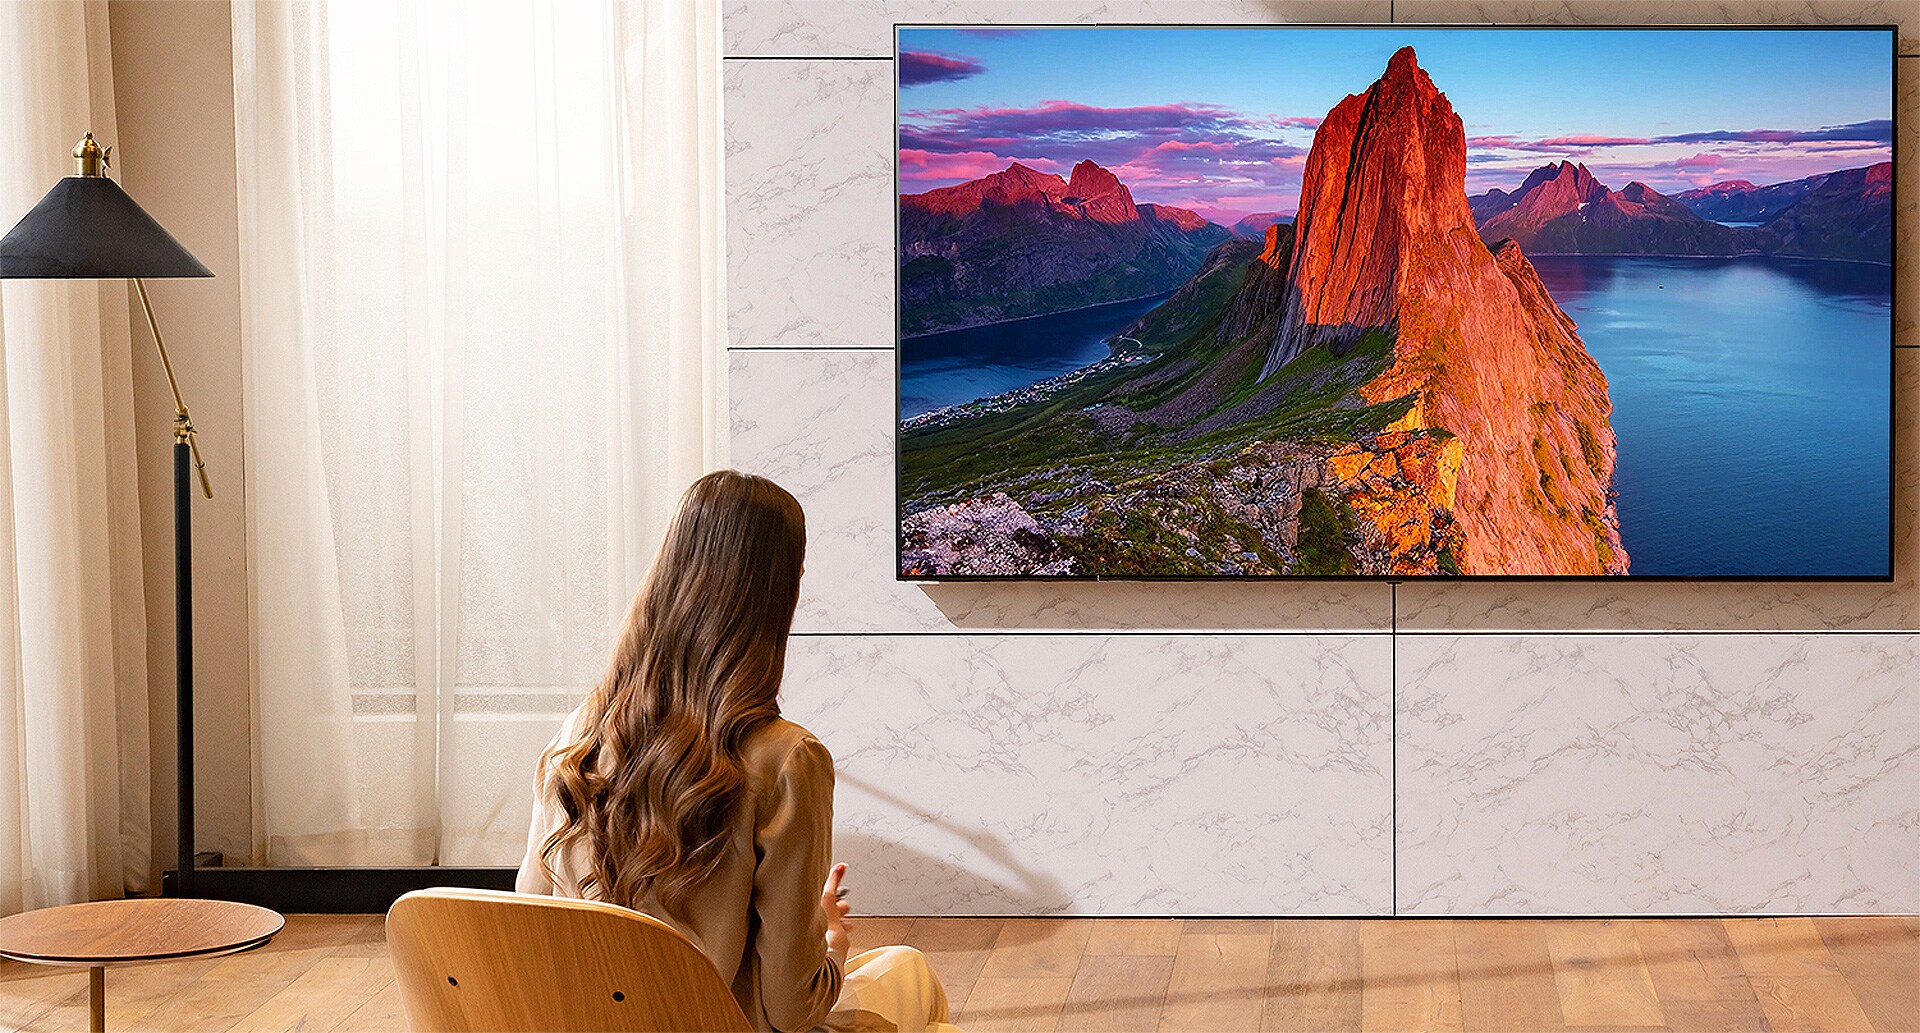 امرأة تشاهد التلفاز في غرفة المعيشة. مشهد المناظر الطبيعية على الشاشة.